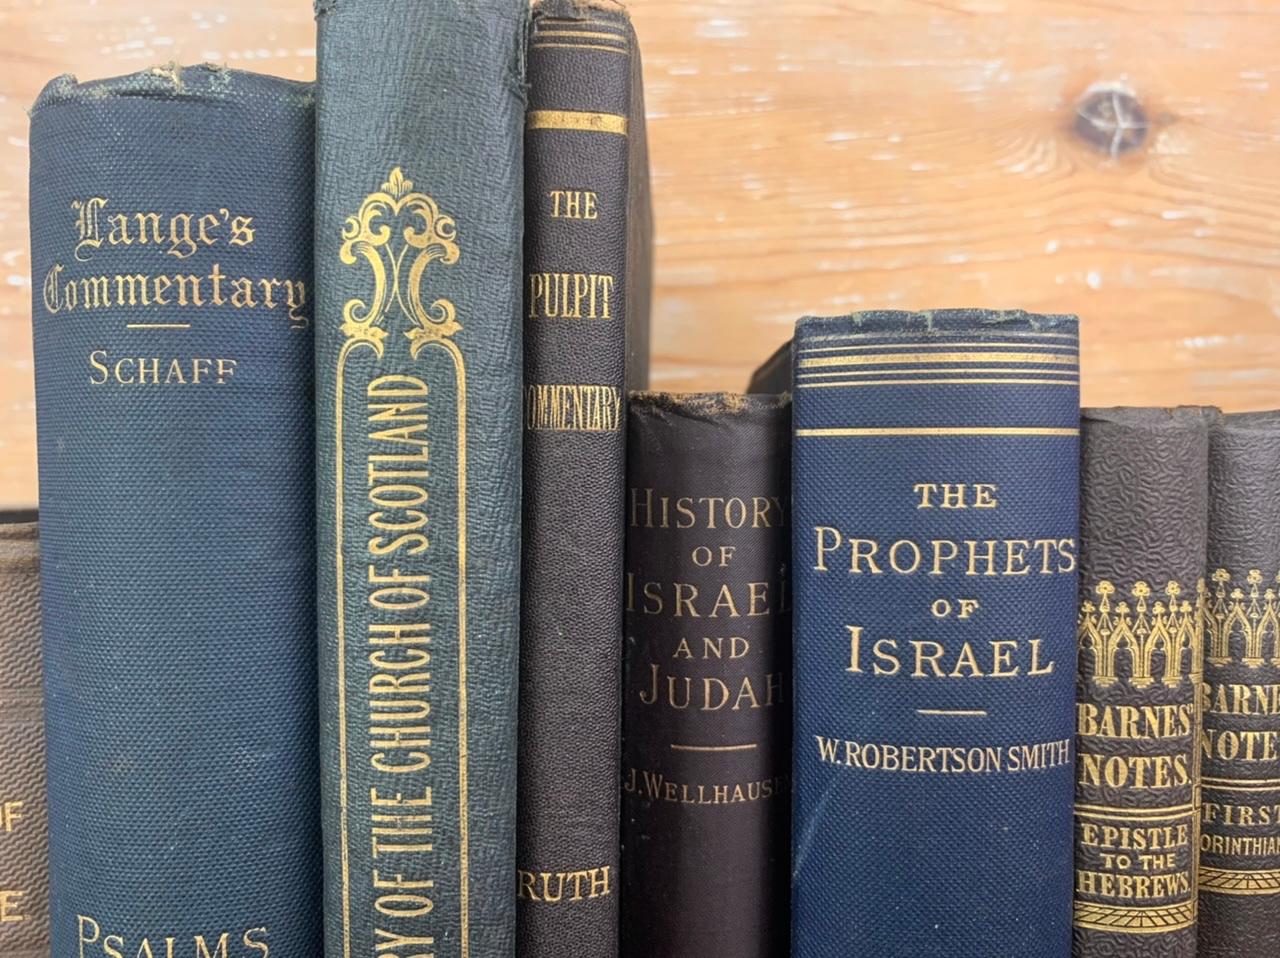 De nombreux livres sur des sujets variés comme le Church's ou l'histoire d'Israël. Ensemble de livres anciens datant du XIXe siècle. D'une ancienne bibliothèque protestante près du Havre en France. Ces beaux livres sont parfaits pour remplir une